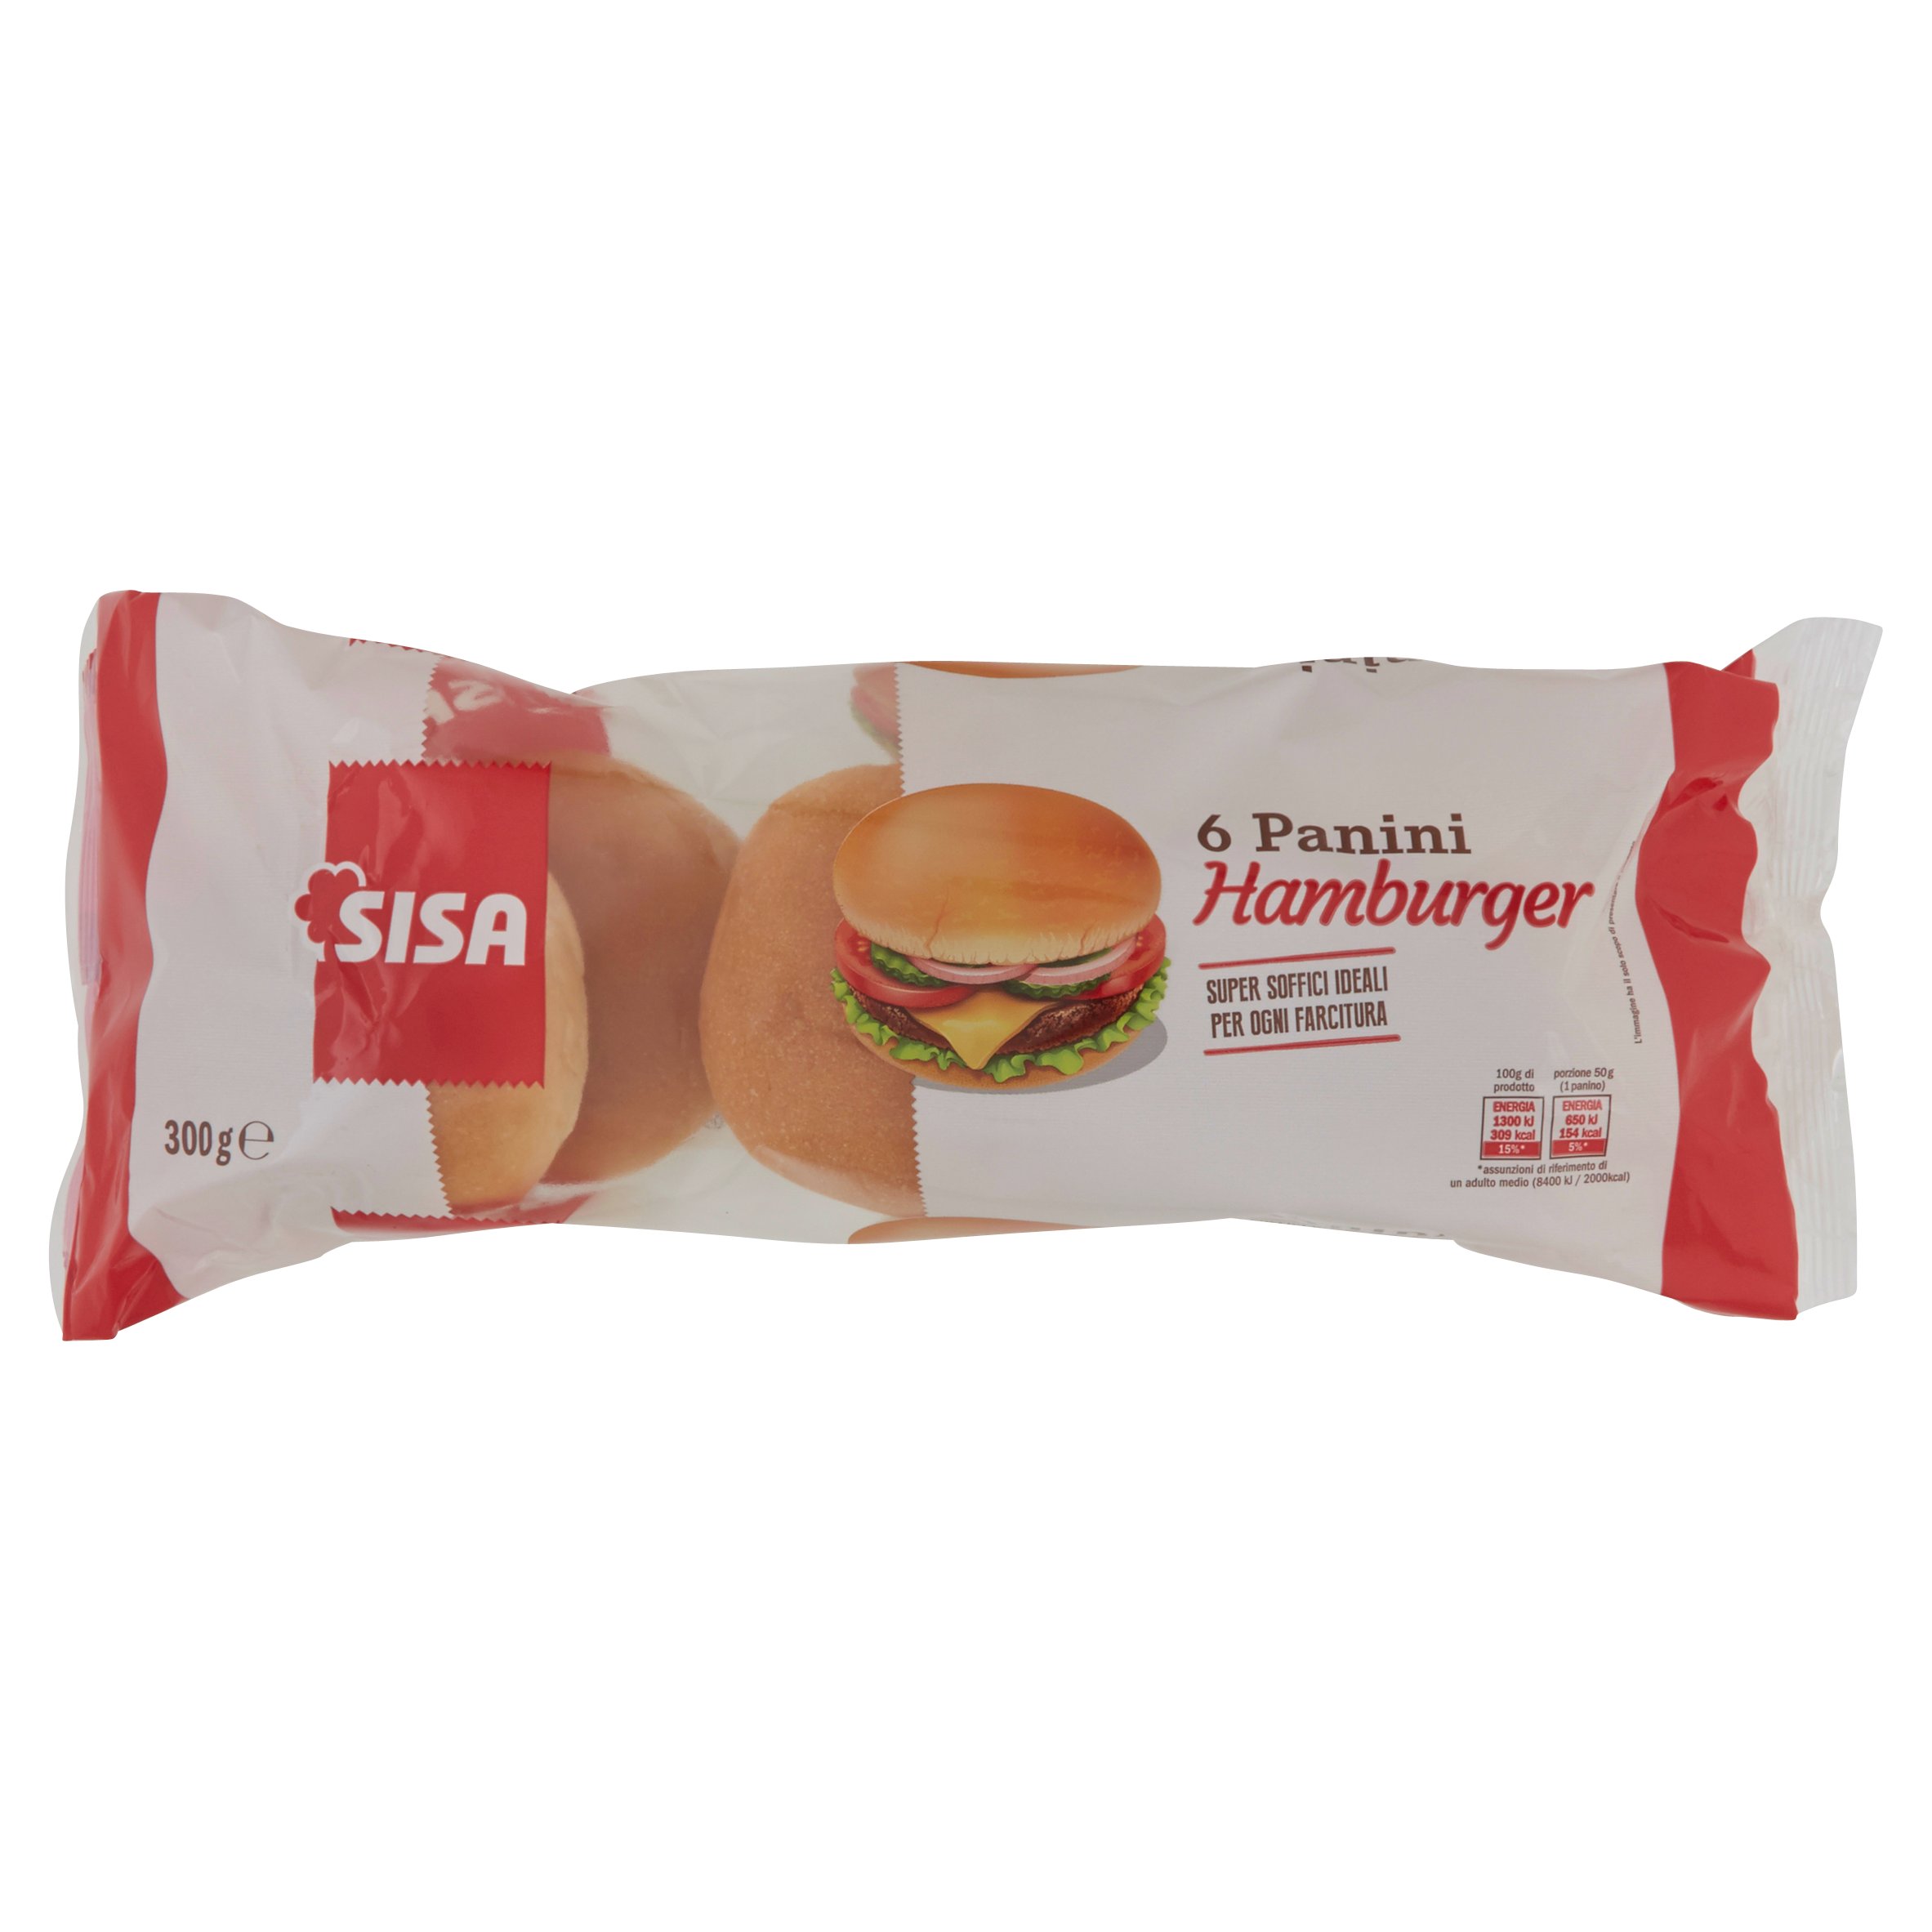 Sisa Panini Hamburger 6 pezzi 300 g - SuperSISA